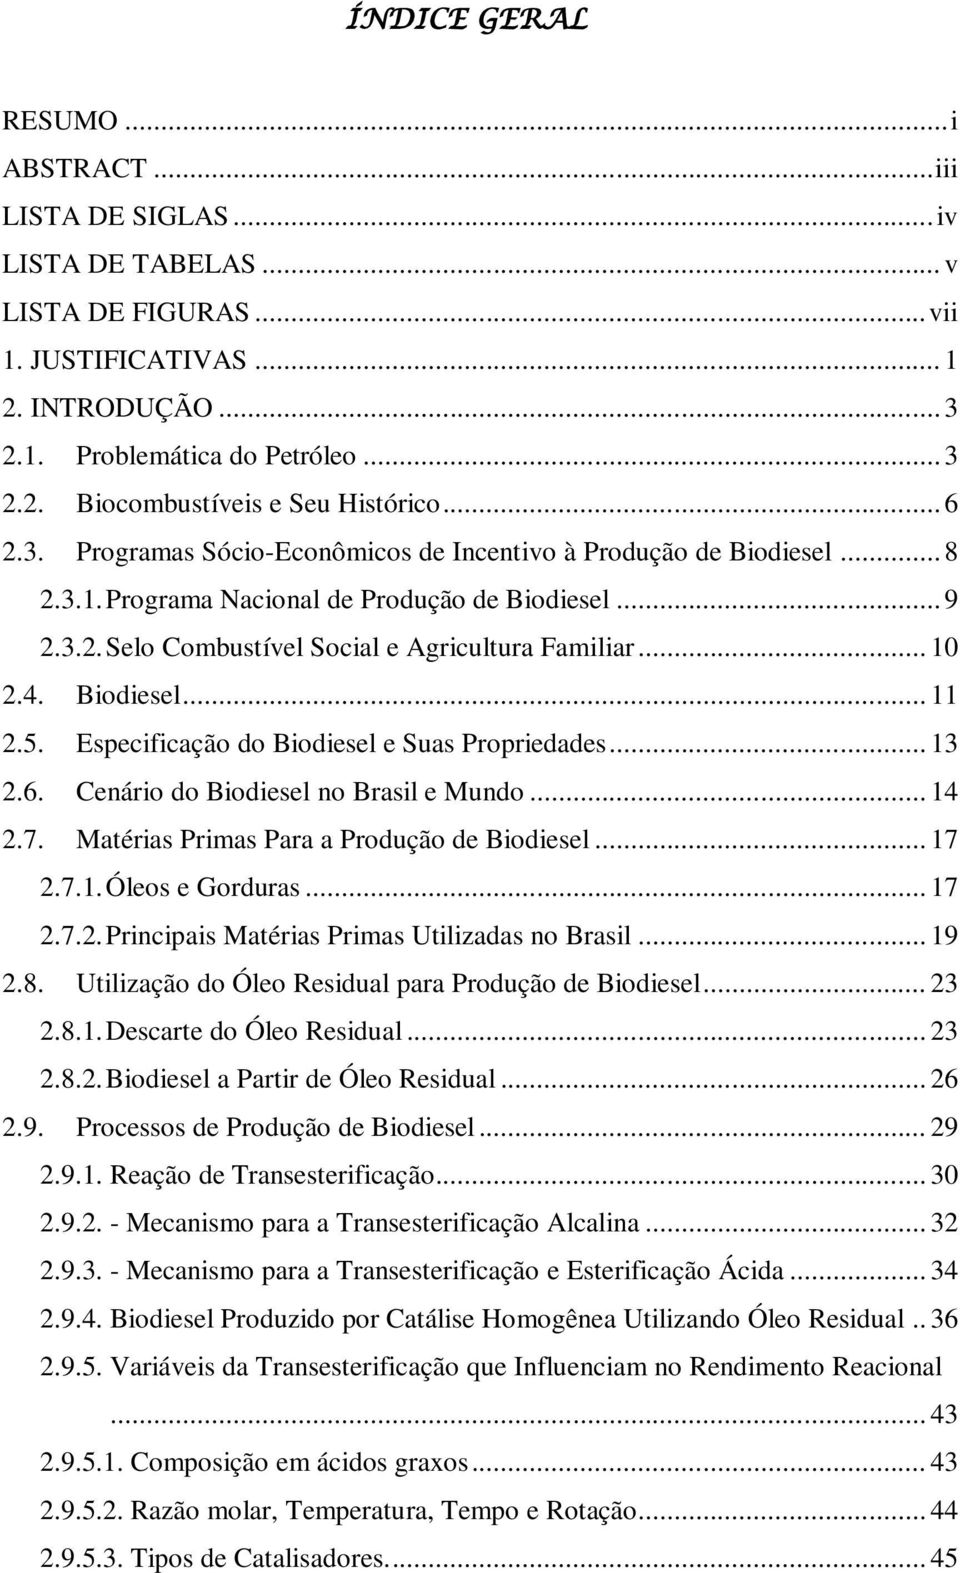 Biodiesel... 11 2.5. Especificação do Biodiesel e Suas Propriedades... 13 2.6. Cenário do Biodiesel no Brasil e Mundo... 14 2.7. Matérias Primas Para a Produção de Biodiesel... 17 2.7.1. Óleos e Gorduras.